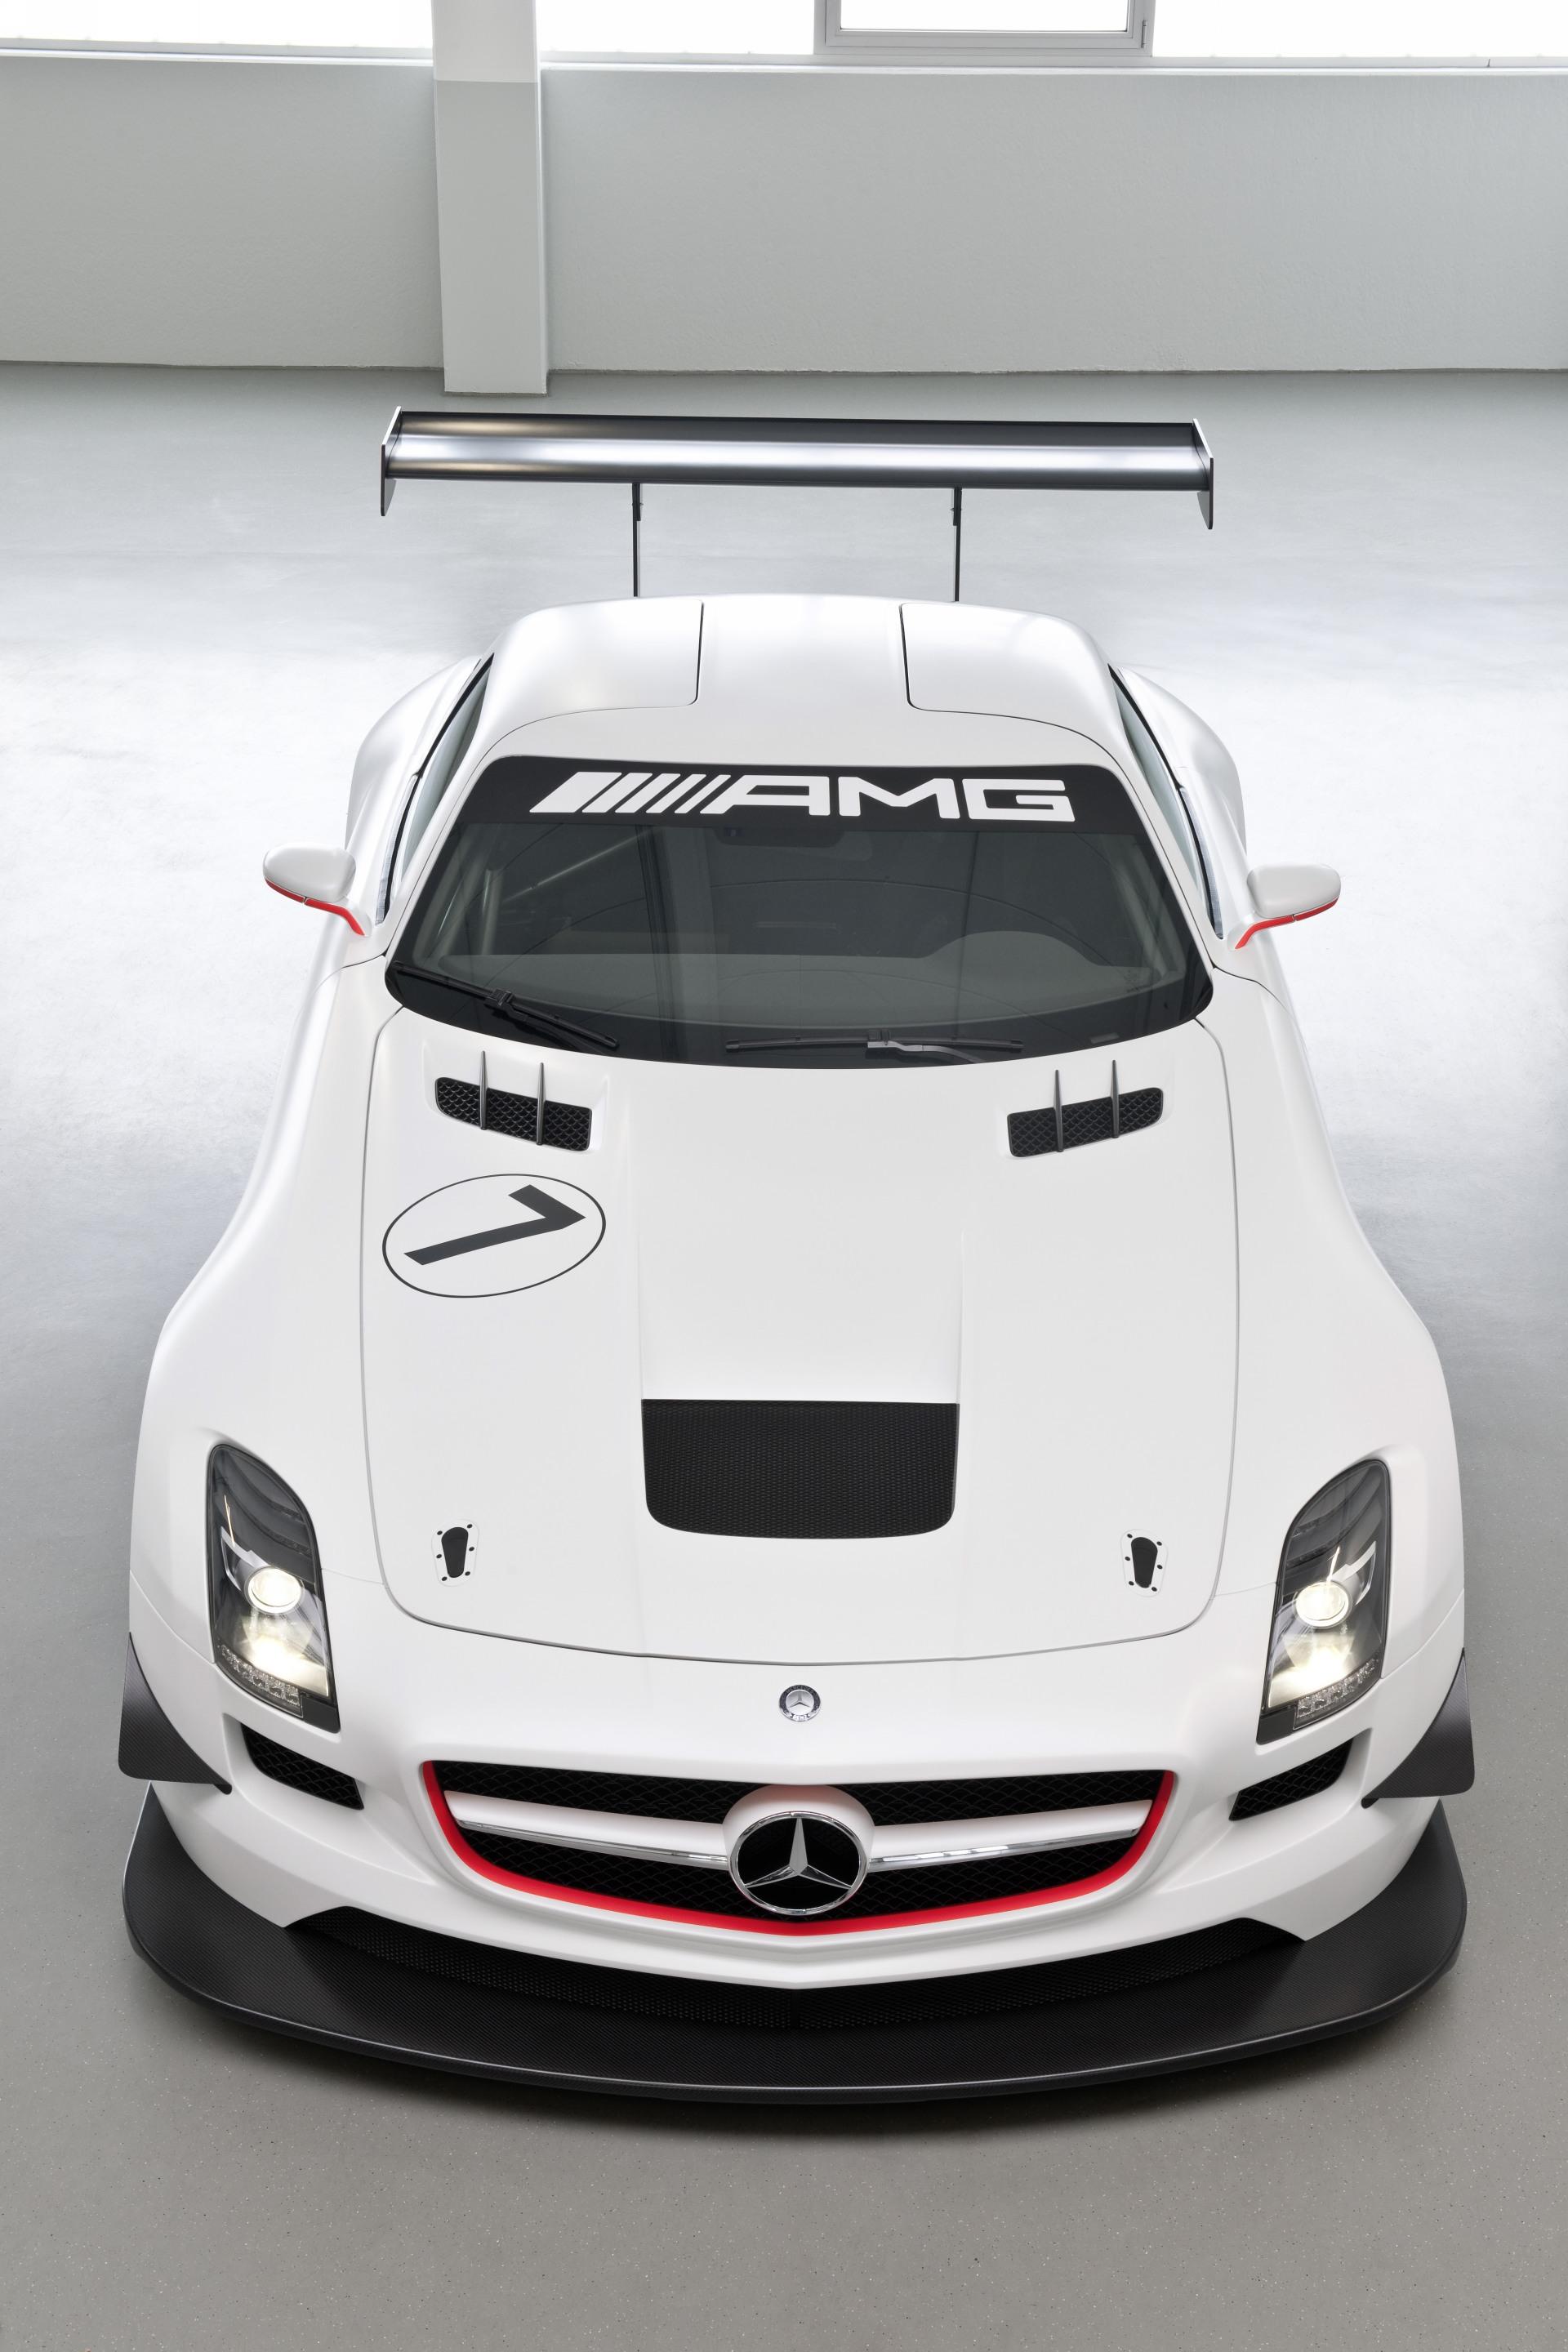 2010 Mercedes-Benz SLS AMG GT3